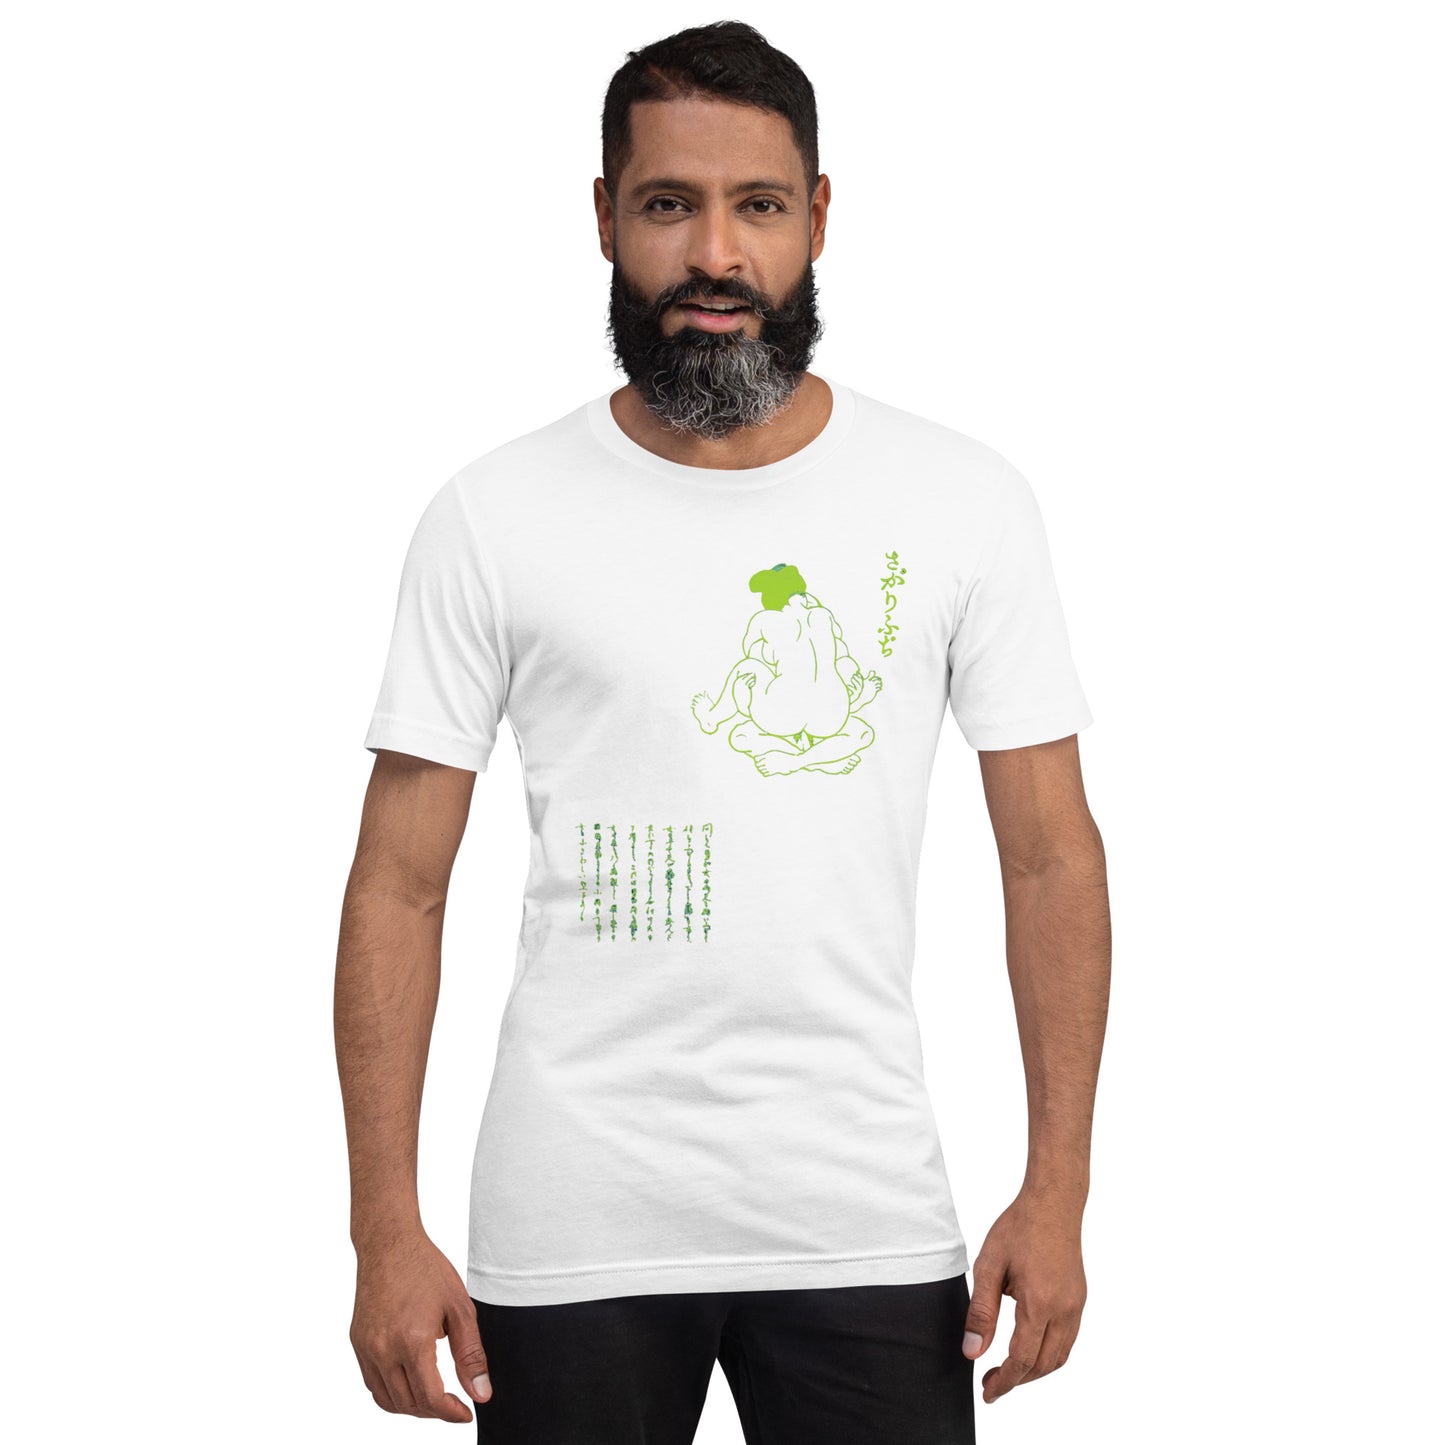 Unisex t-shirt "25 SAGARI HUCHI" White